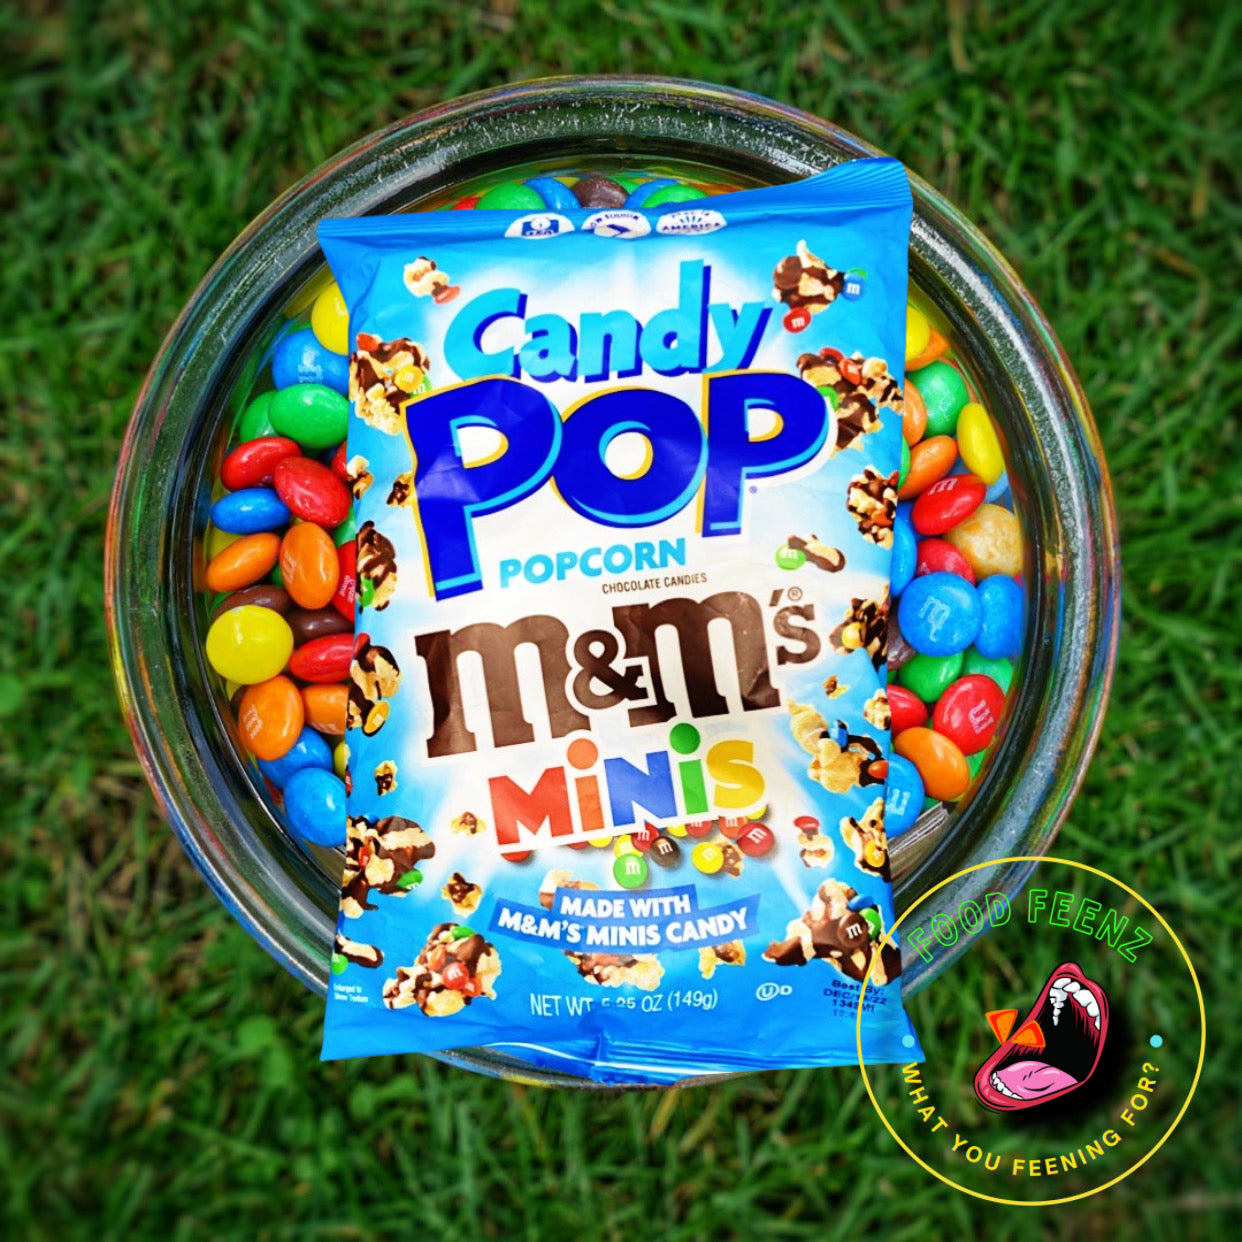 M&M'S Candy Pop Popcorn